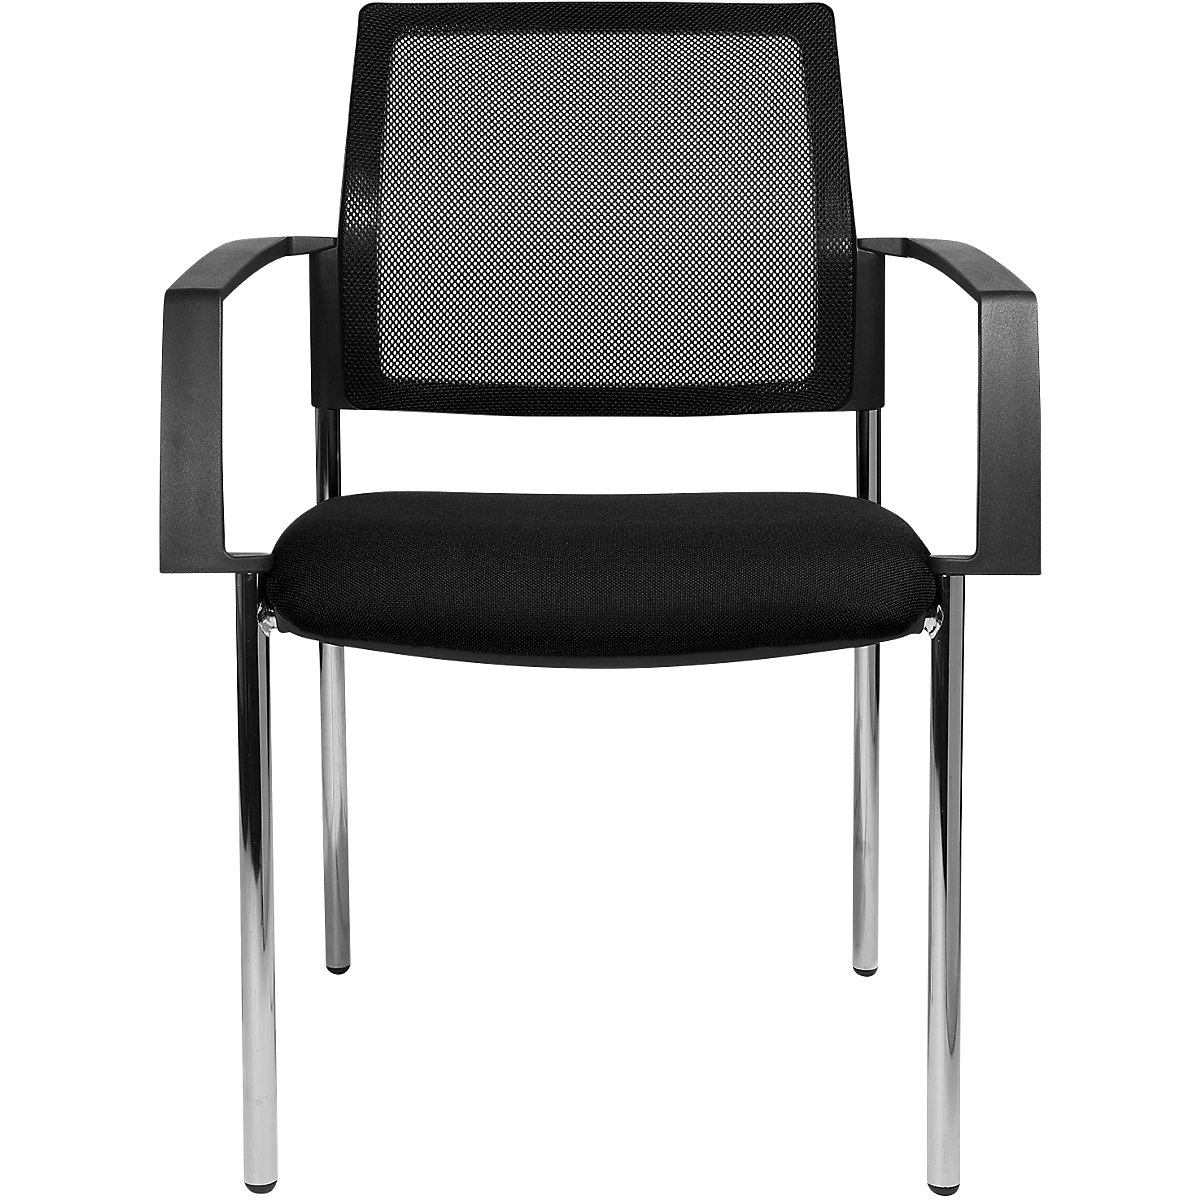 Mesh stapelstoel – Topstar, 4 stoelpoten, VE = 2 stuks, zitting zwart, frame chroom-5